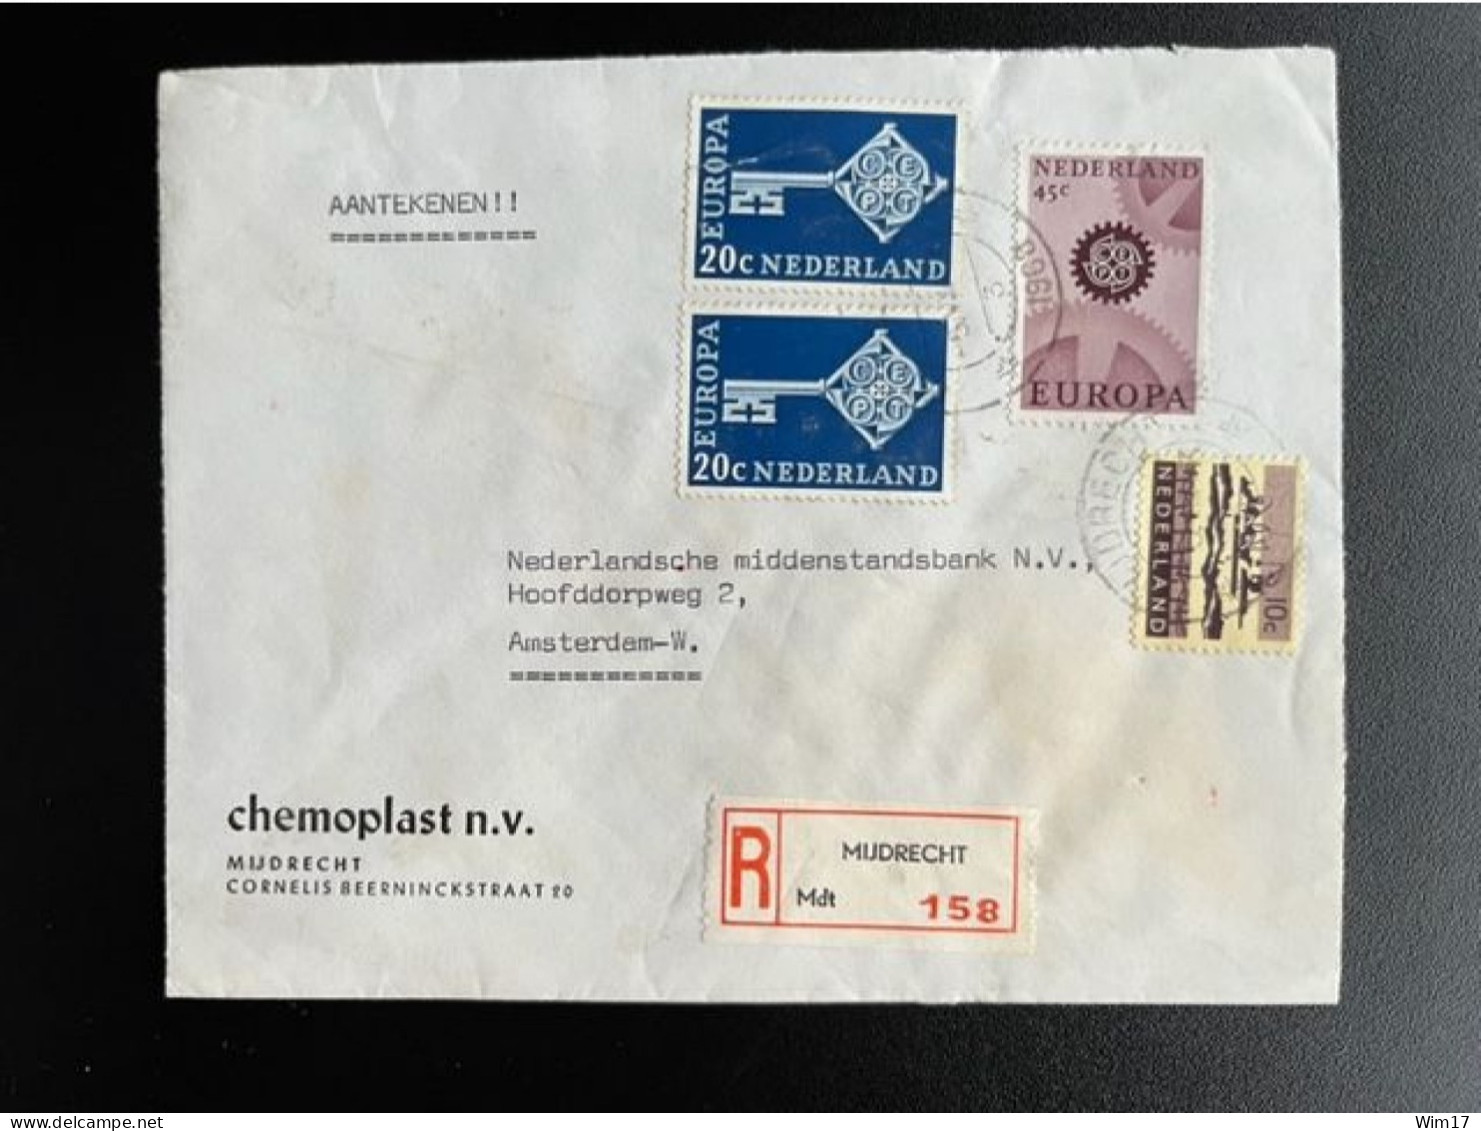 NETHERLANDS 1968 REGISTERED LETTER MIJDRECHT TO AMSTERDAM 05-08-1968 NEDERLAND AANGETEKEND - Briefe U. Dokumente